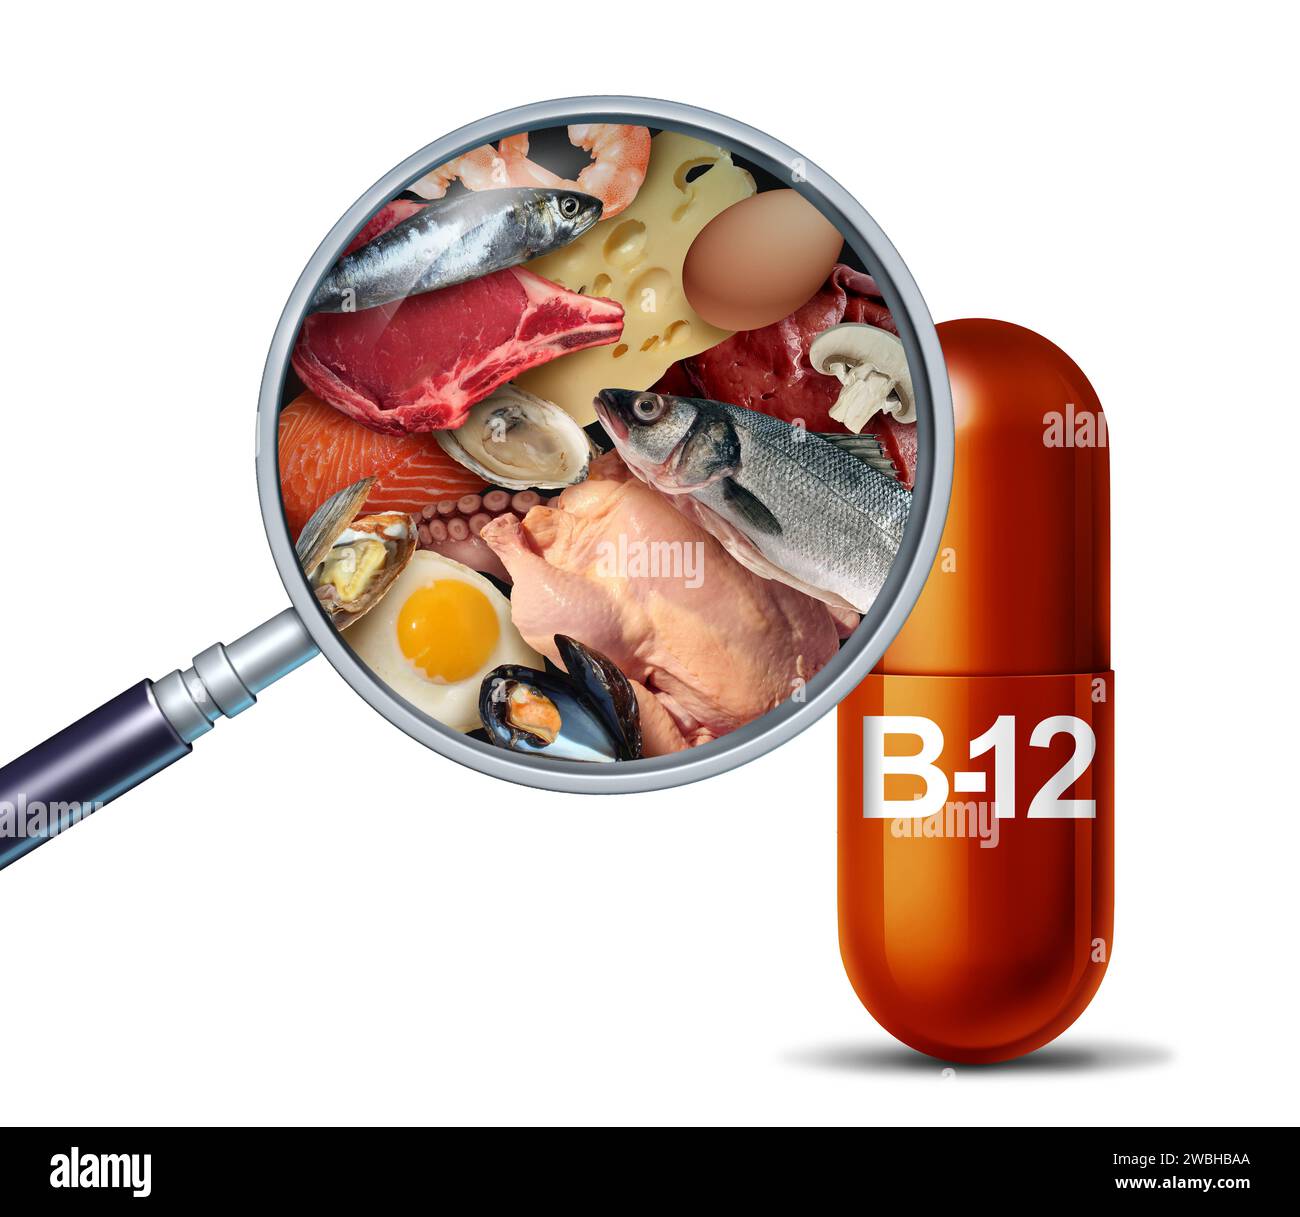 Vitamina B12 fonte naturale integratore nutrizionale come pillola di cobalamina integratori come capsula con fegato di manzo e frutti di mare all'interno di una pillola nutriente come a n Foto Stock